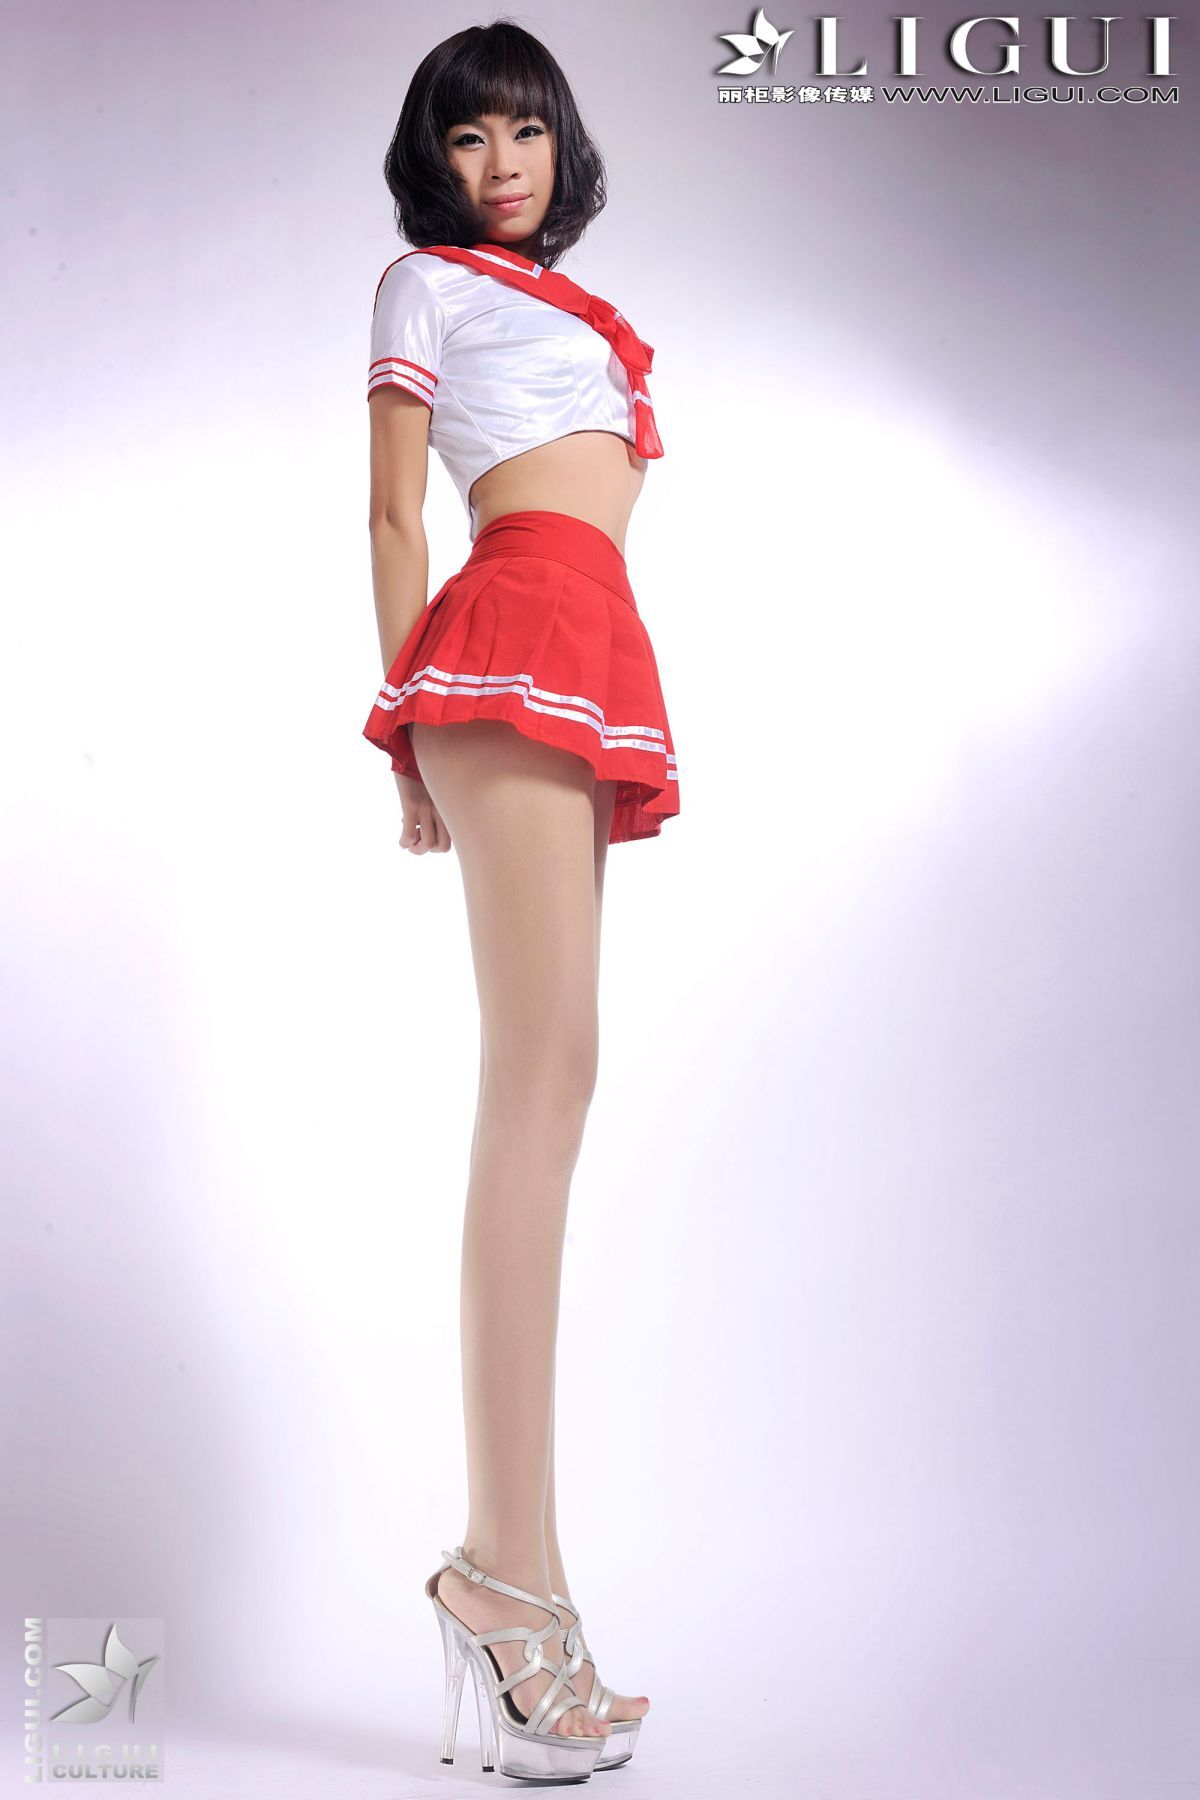 Red sailor's suit model - photo of Gao Gen's uniform